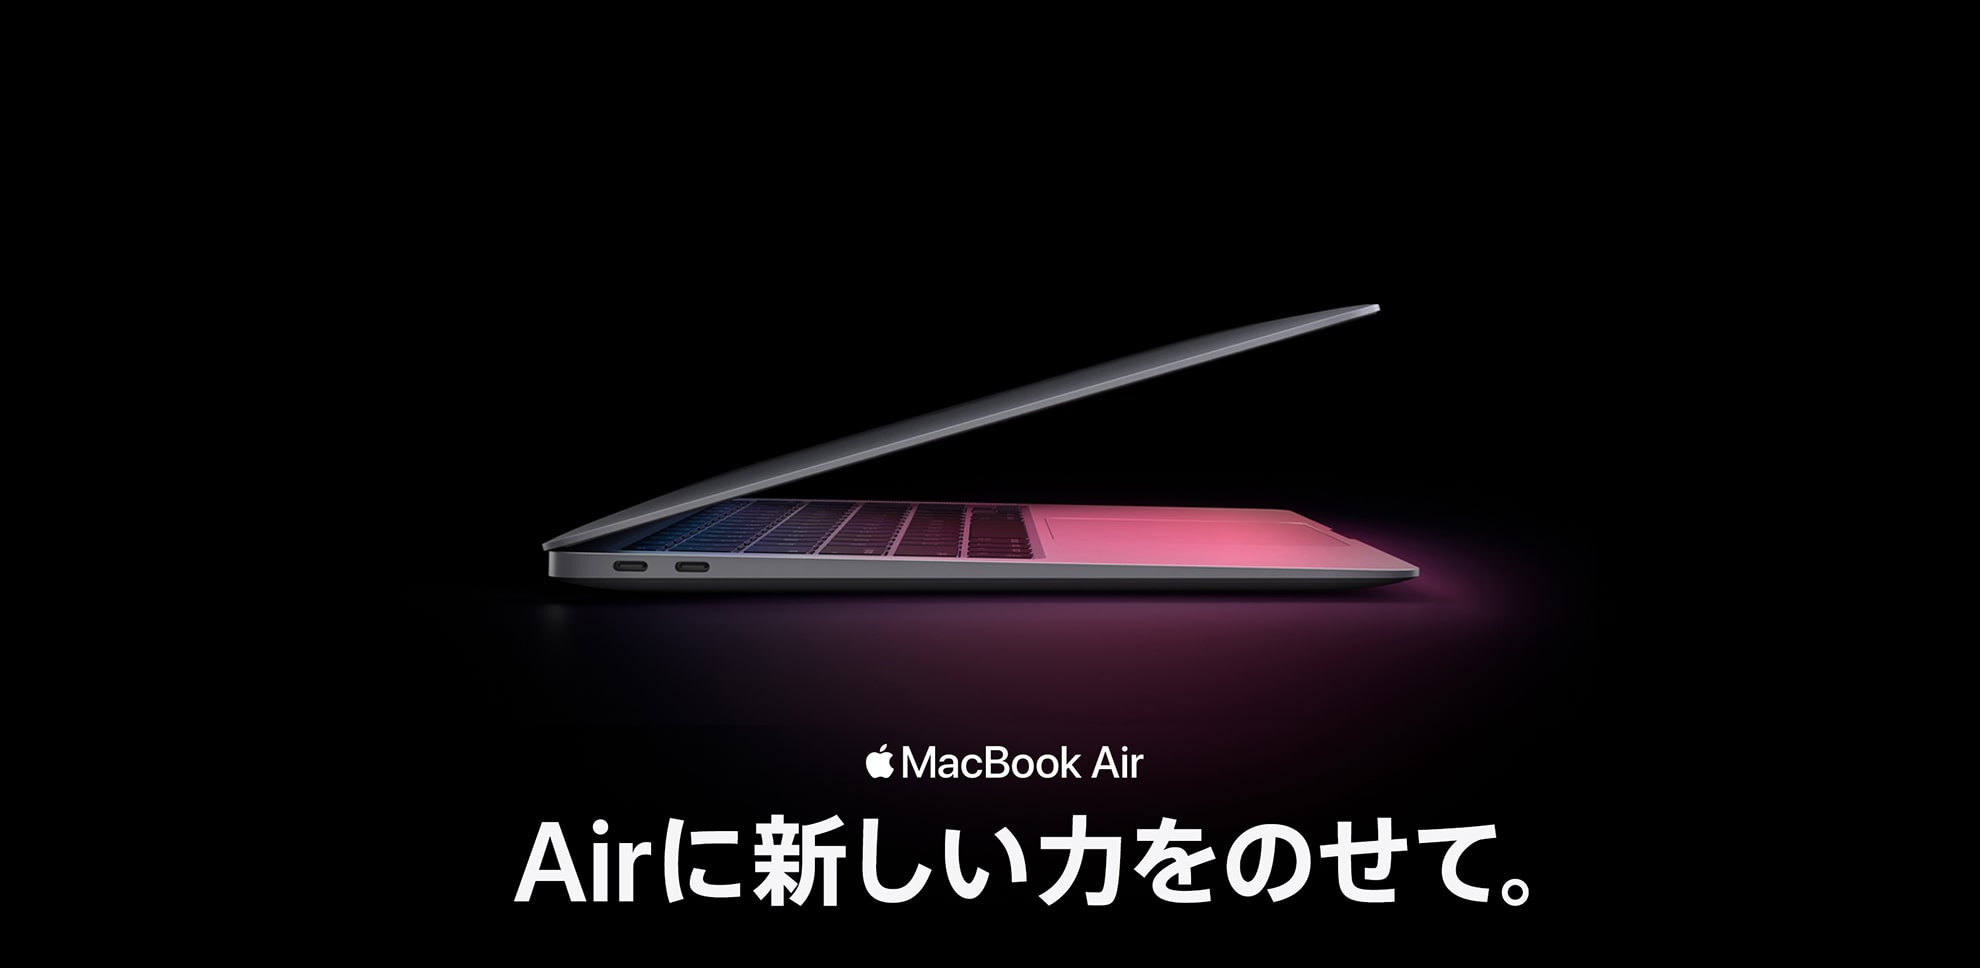 MacBook Air M1チップ